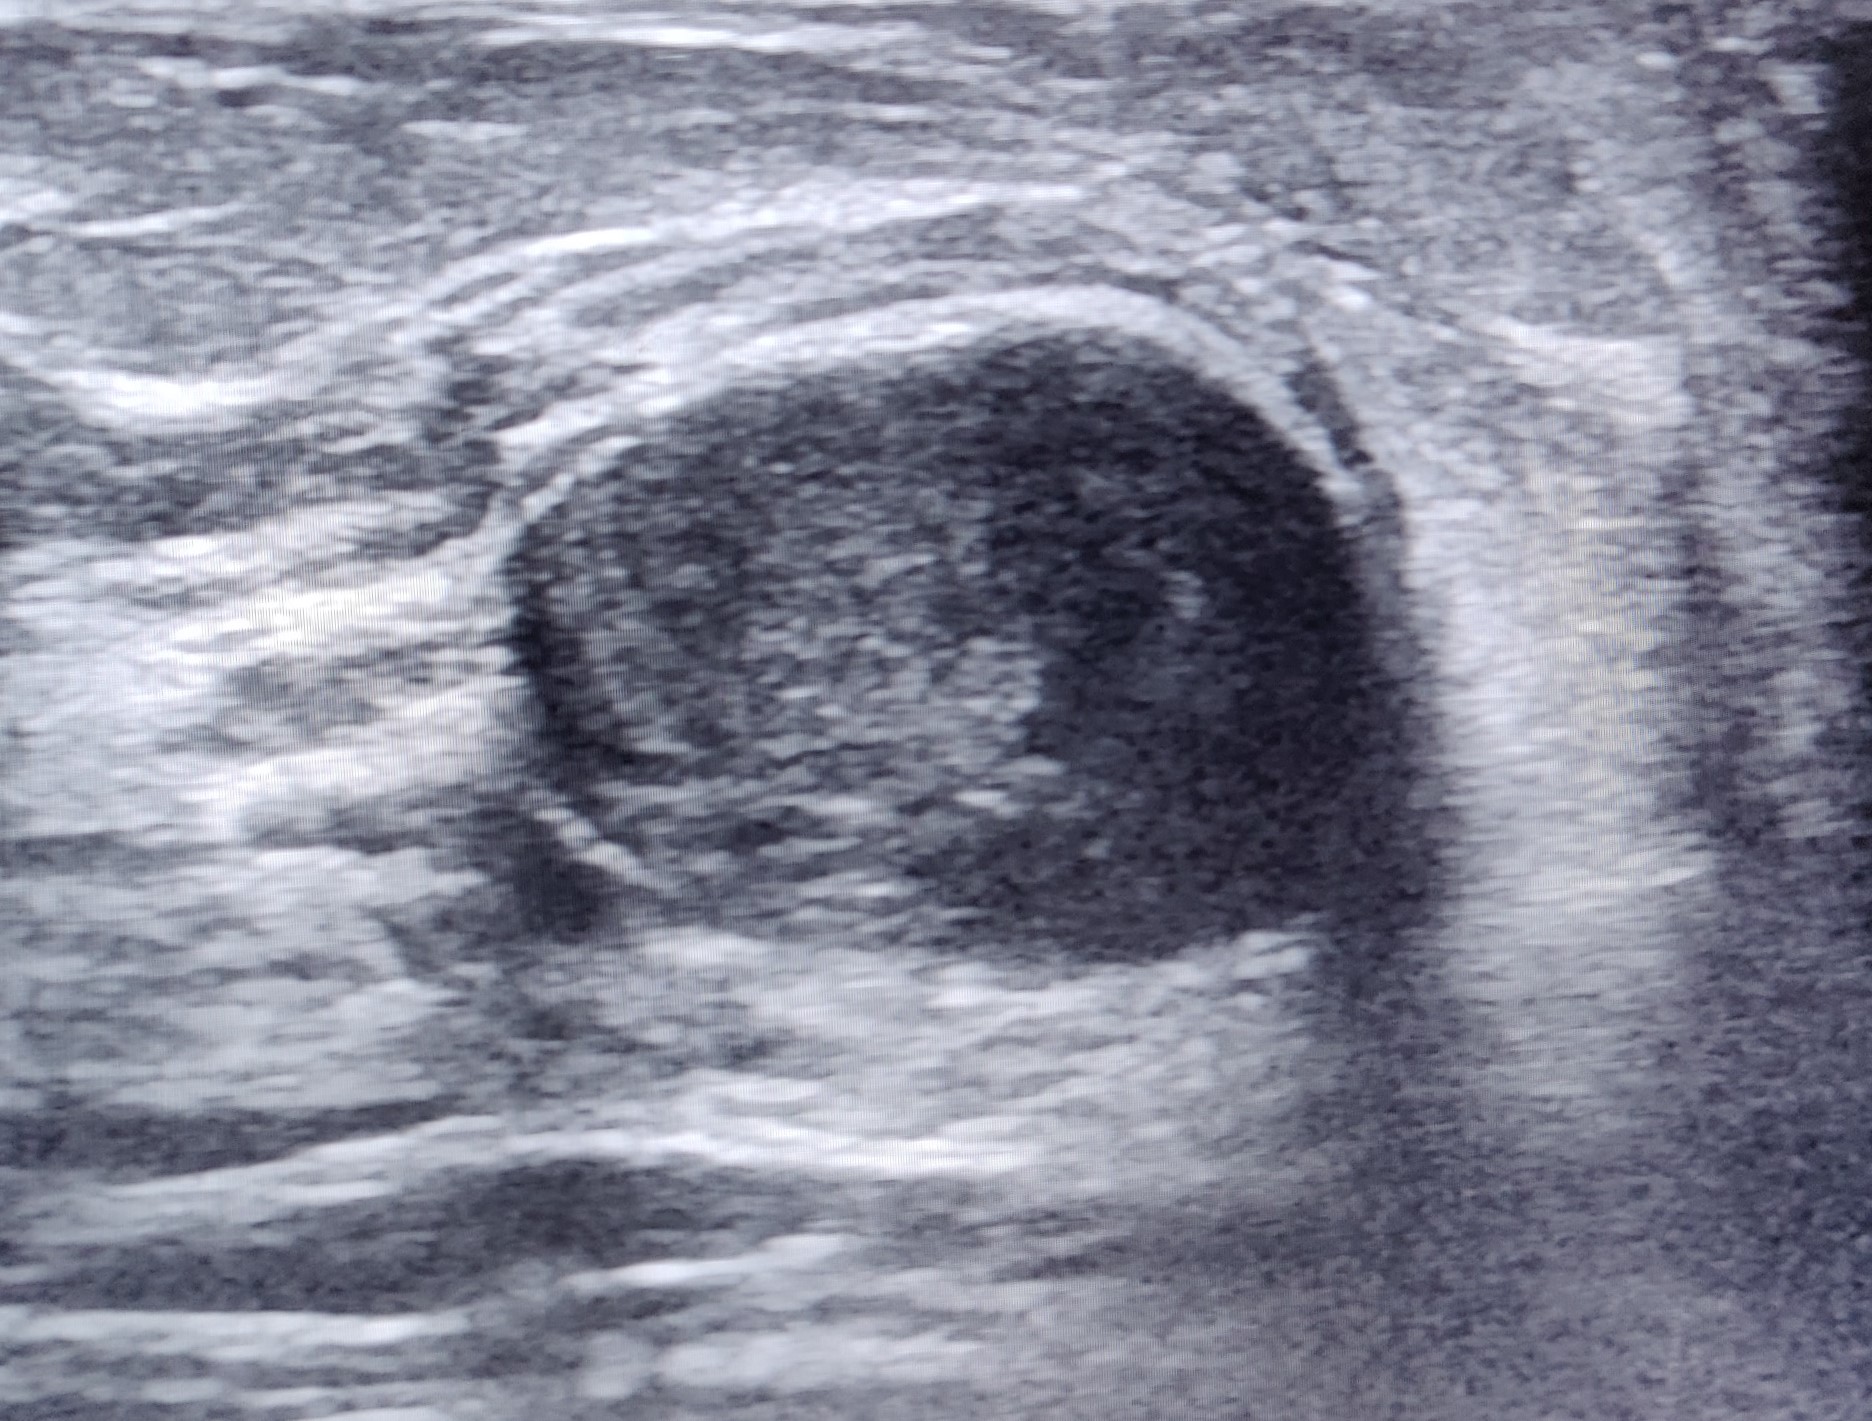 Ultrasound image showing round echoic cyst suggestive of inspissated galactocele